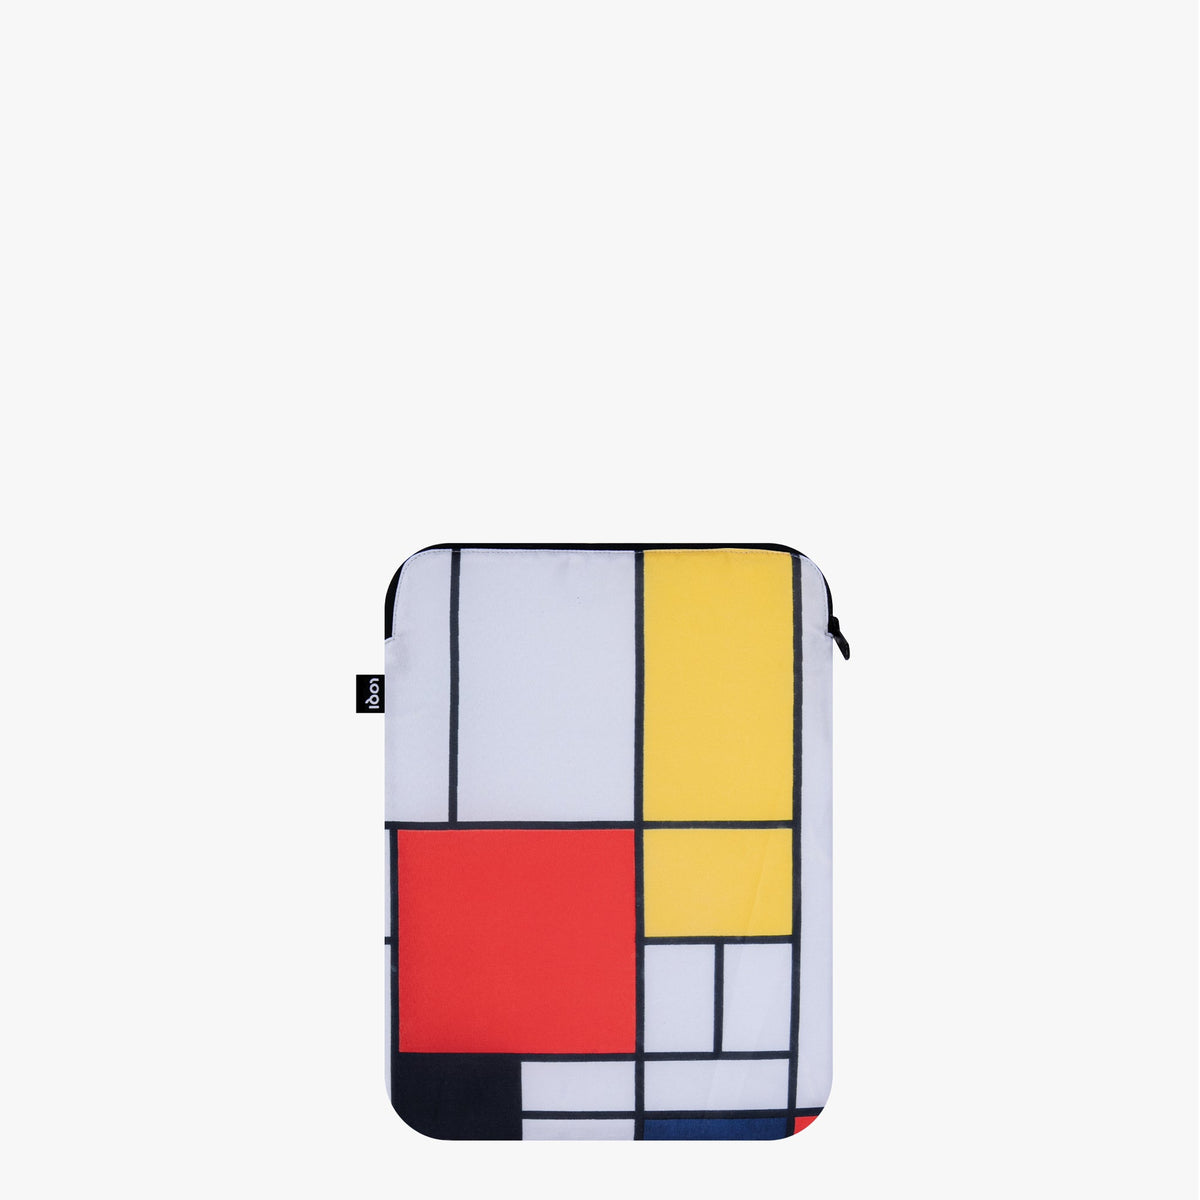 Composición con funda reciclada para portátil de 13&quot; roja, amarilla, azul y negra